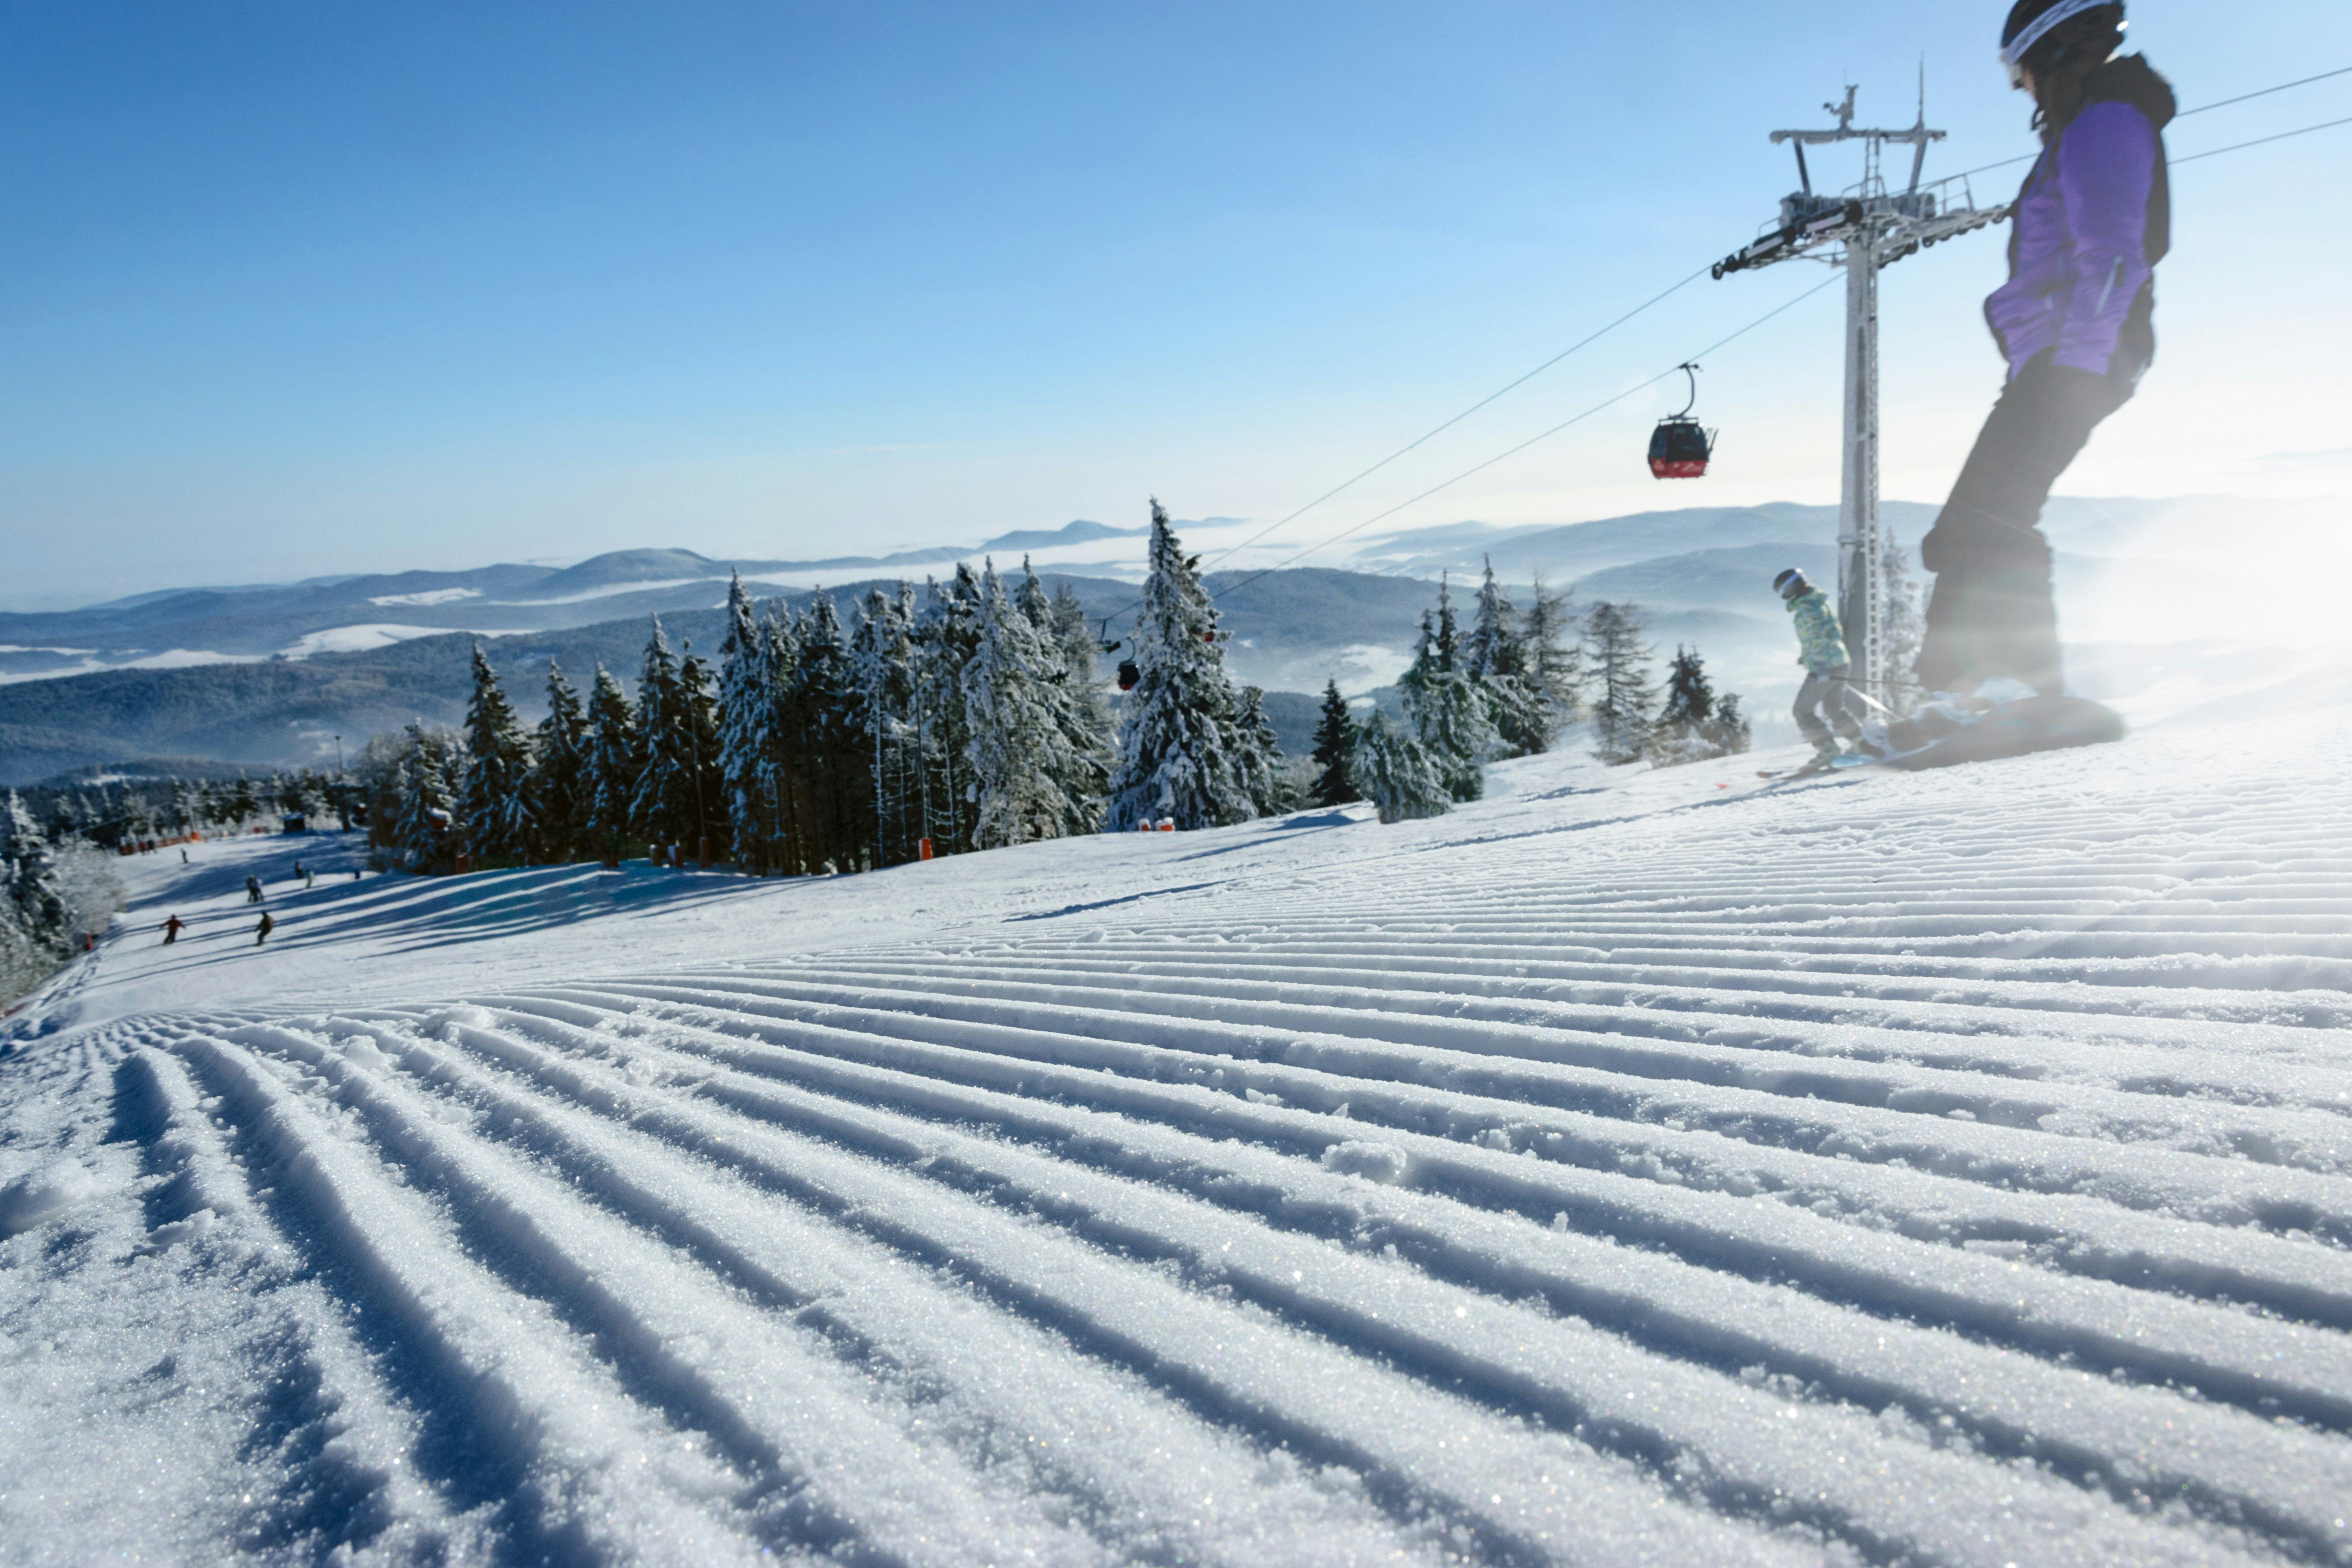 Beroep op 'normaal vakantiegedrag' irrelevant: Aegon hoeft ski's niet te vergoeden